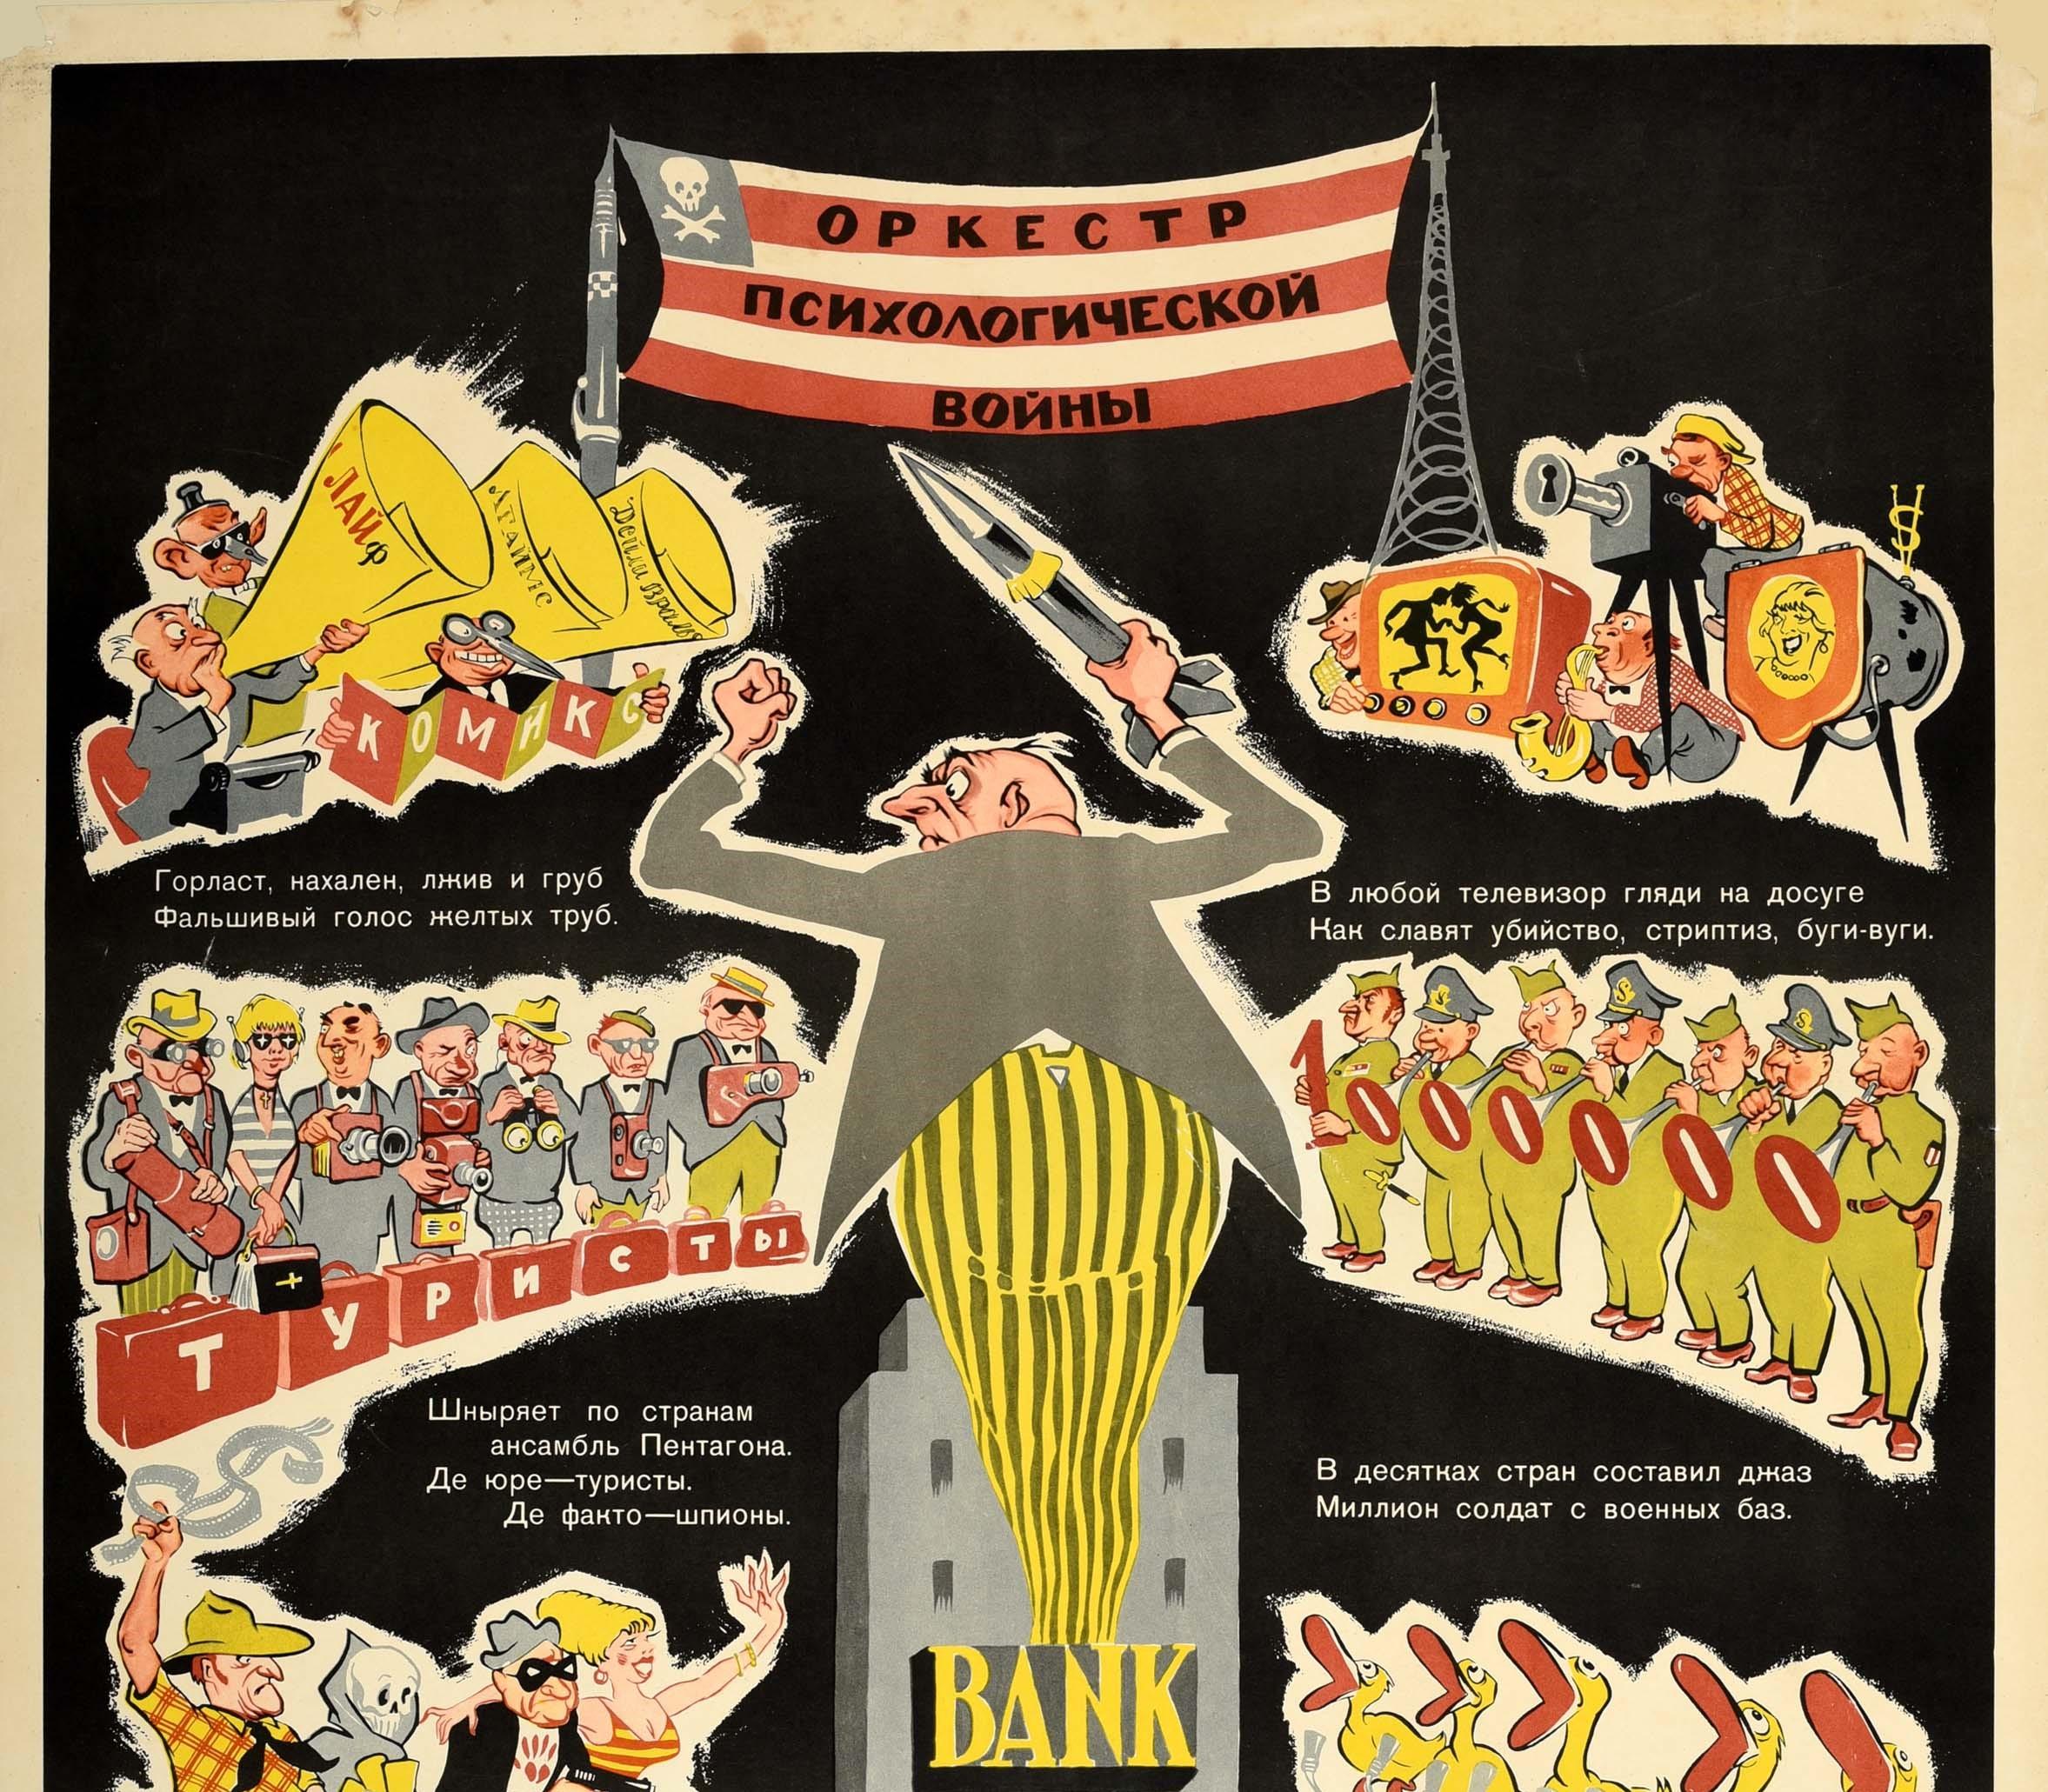 Originales sowjetisches Anti-USA-Propagandaplakat mit dem Titeltext auf einer Flagge von Amerika mit roten und weißen Streifen und einem Totenkopf-Emblem anstelle von Sternen - Psychological War Orchestra / ??????? ??????????????? ????? - und einem